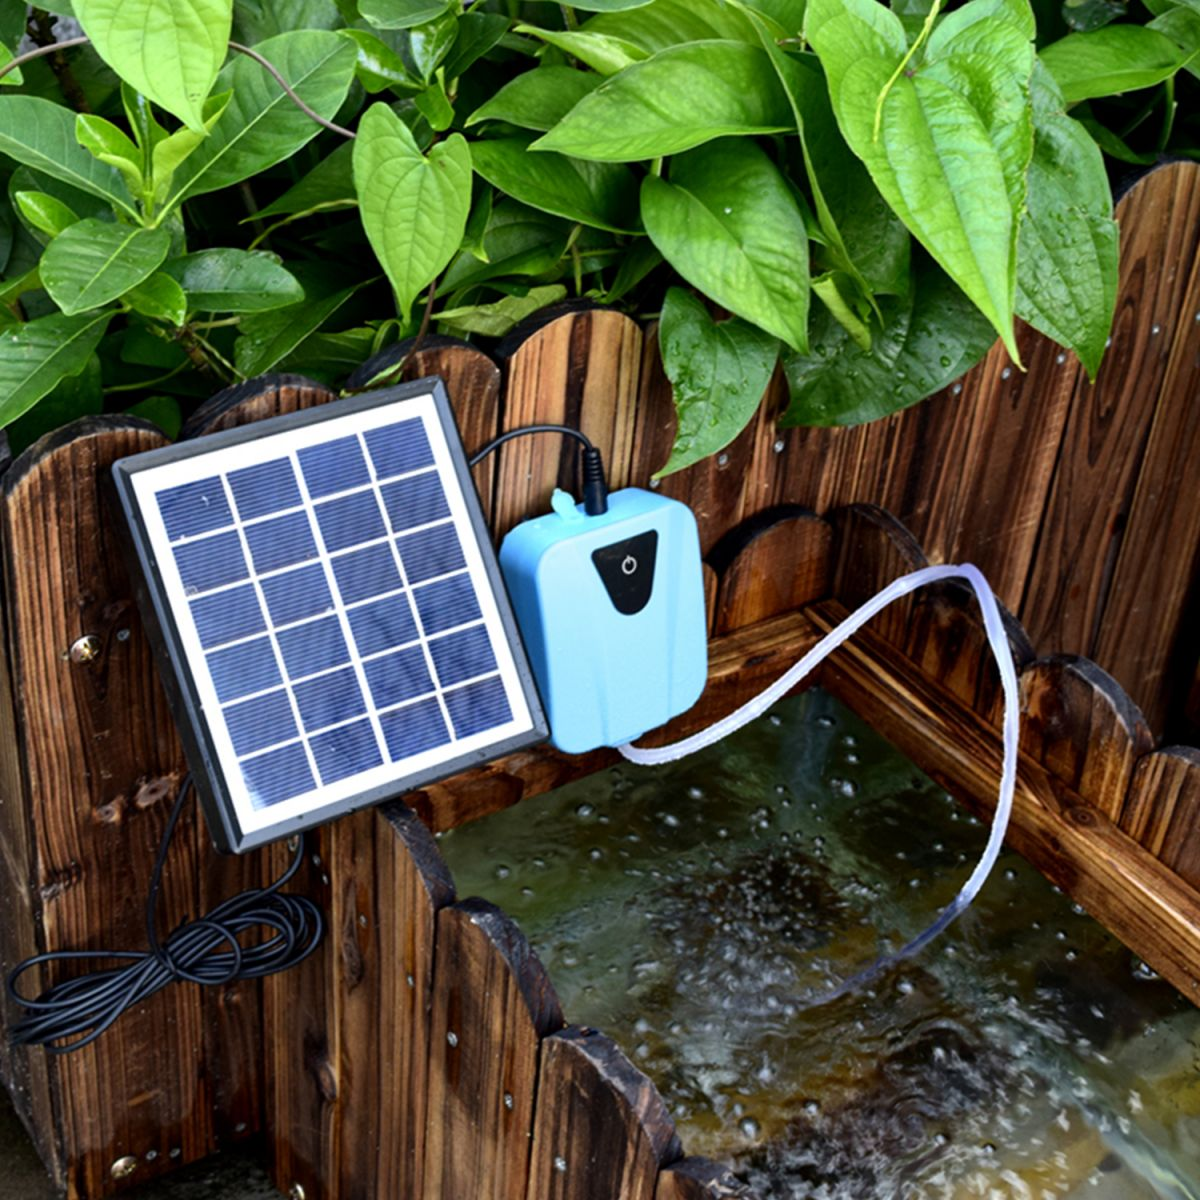 DEDOM Sauerstoffpumpe,Solarmodul,Teichbelüfter Luftpumpe,für Teich Blau Garten Aquarium Belüftungspumpe